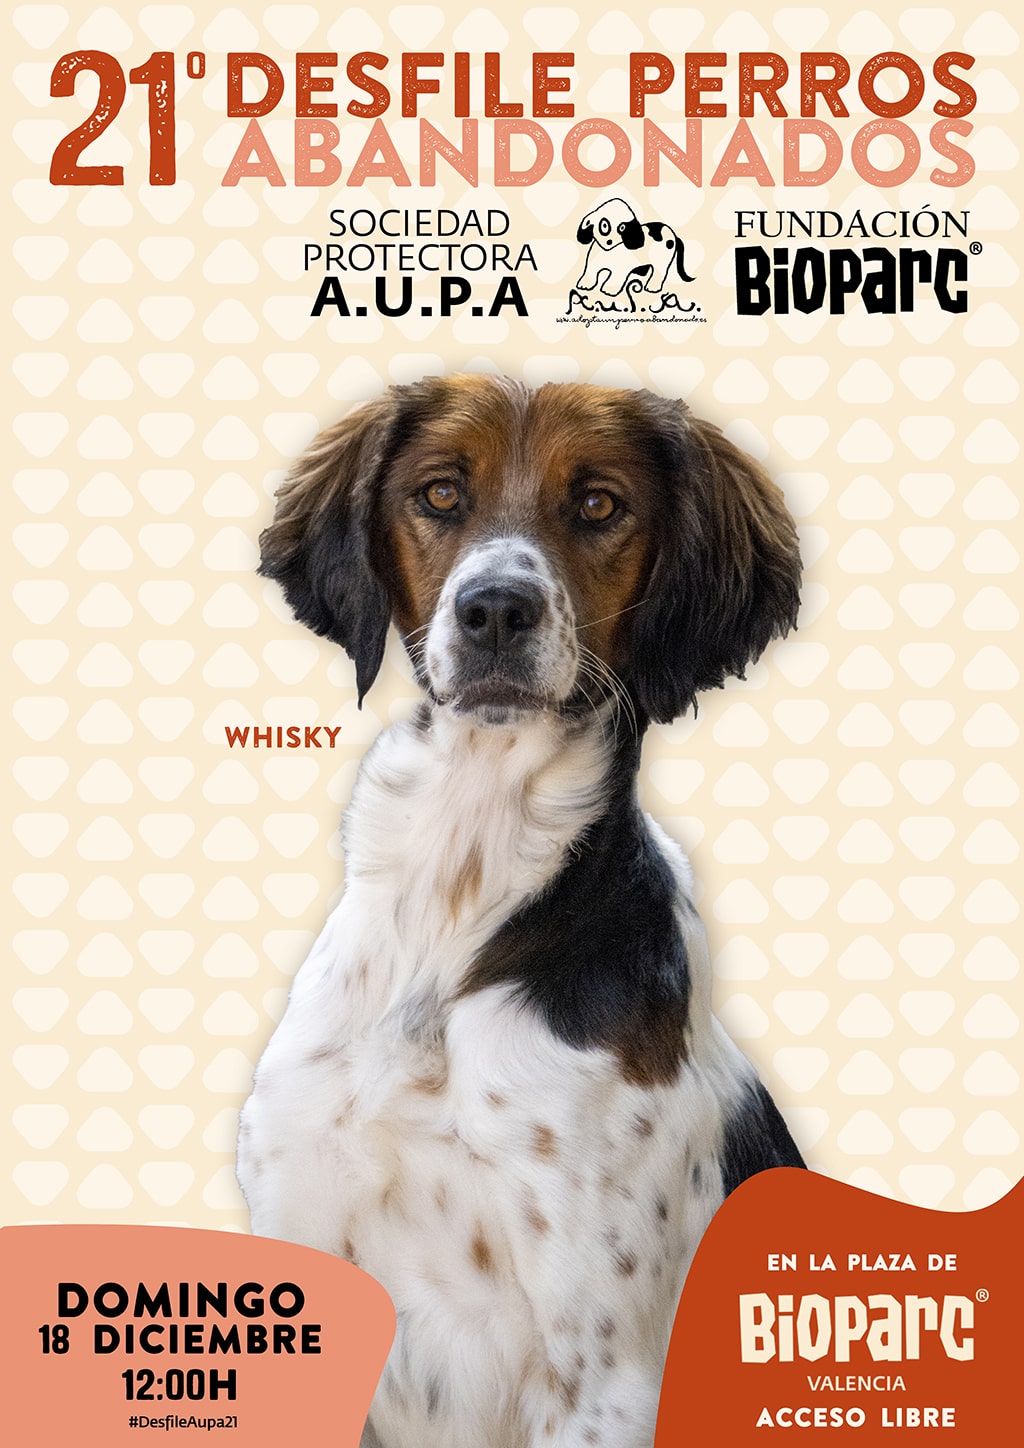 Este domingo BIOPARC Valencia acoge el 21º Desfile para adoptar perros abandonados de la protectora AUPA